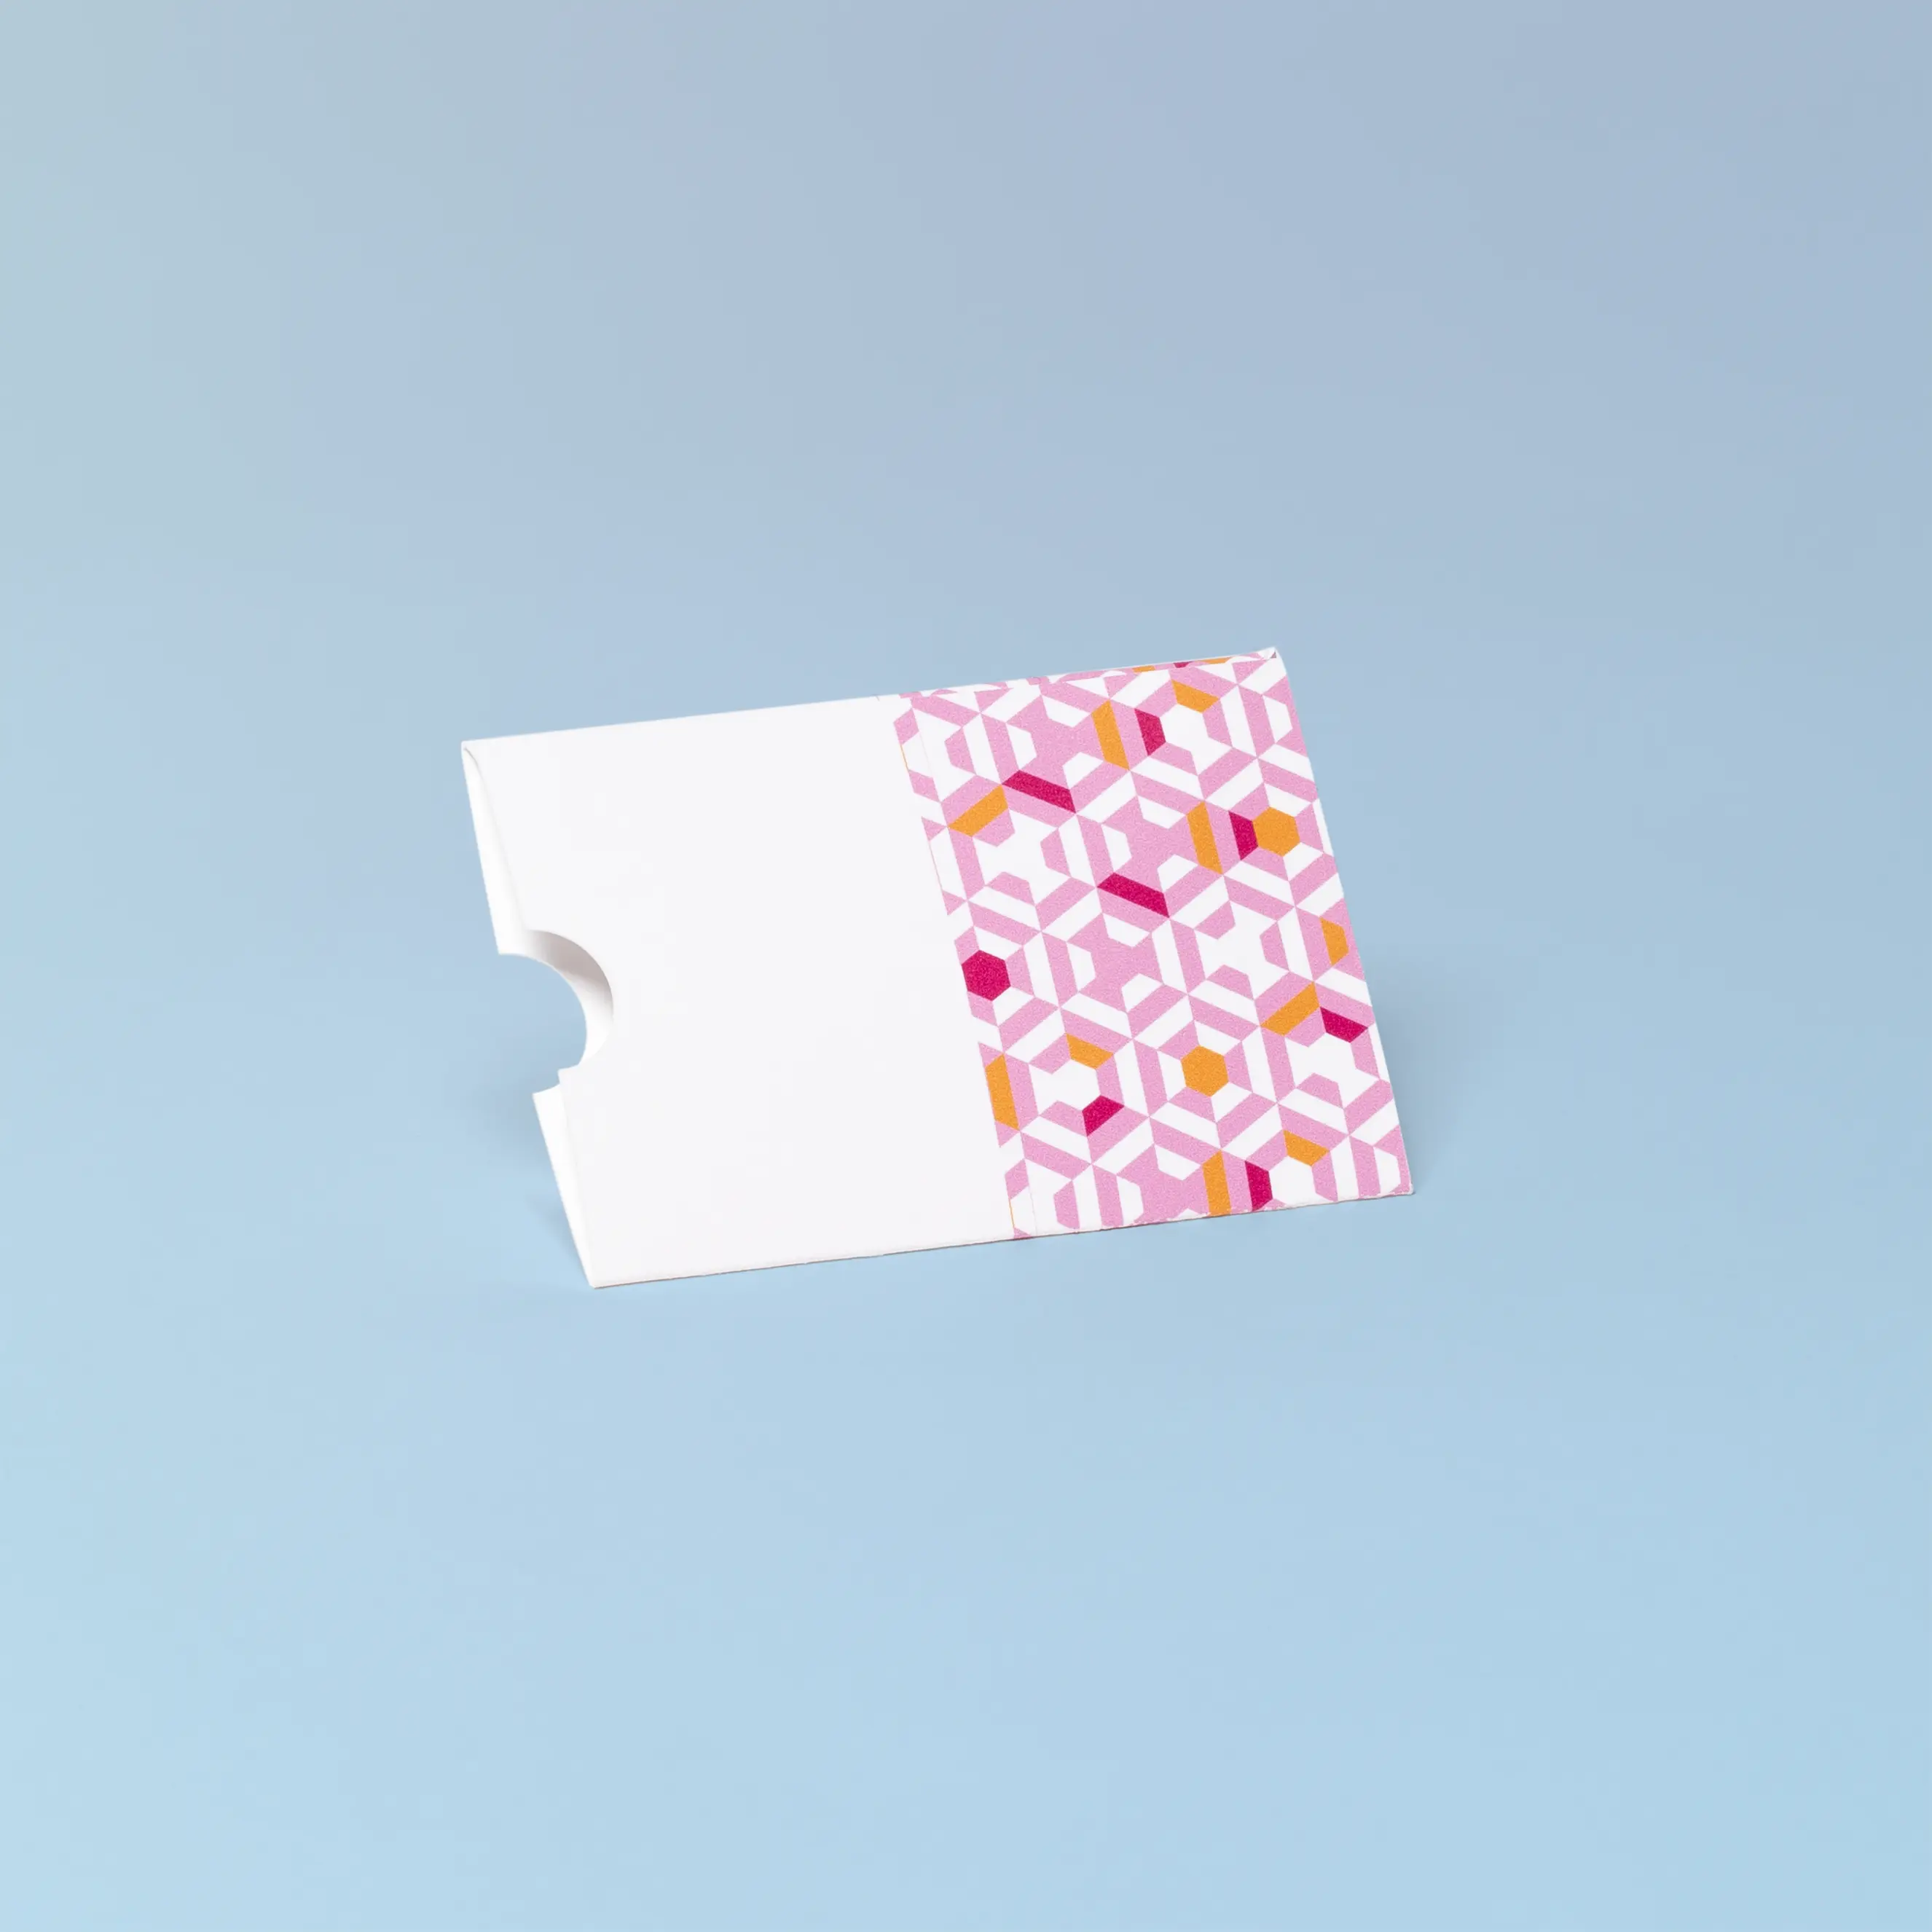 Kartenhülle ohne Verschluss, von hinten, blauer Hintergrund